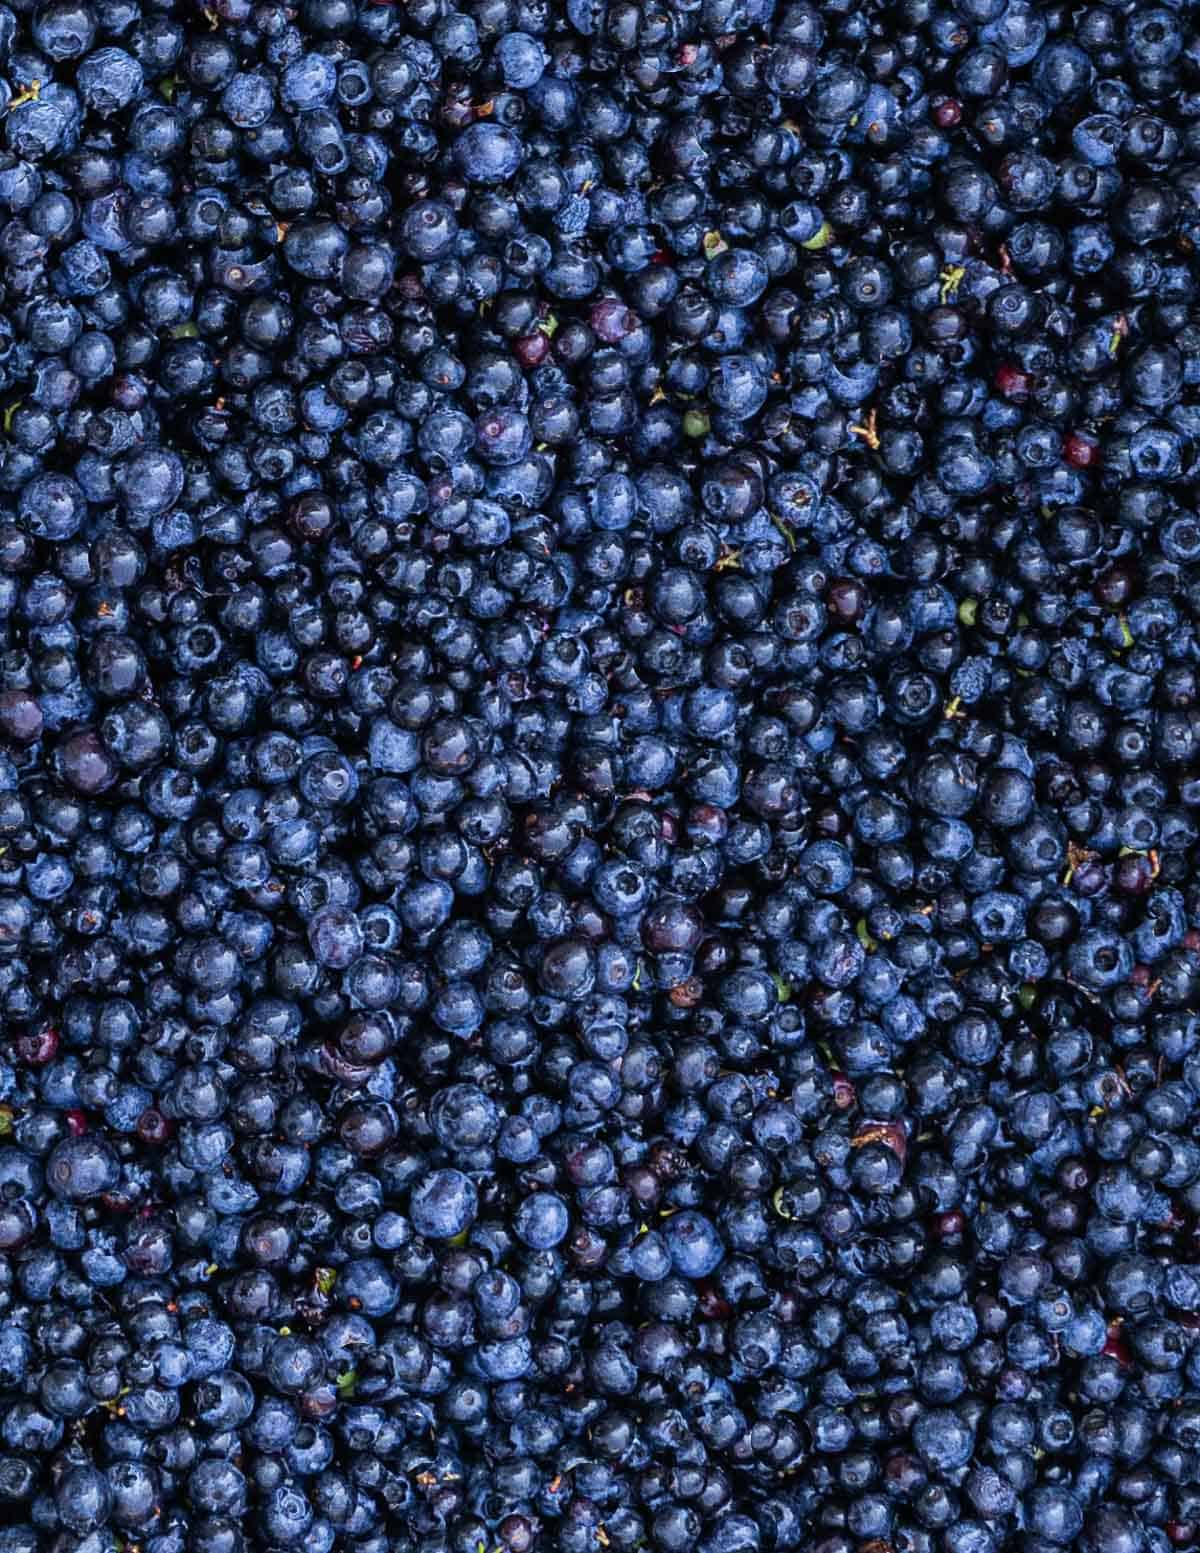 Fresh wild lowbush blueberries after being winnowed.